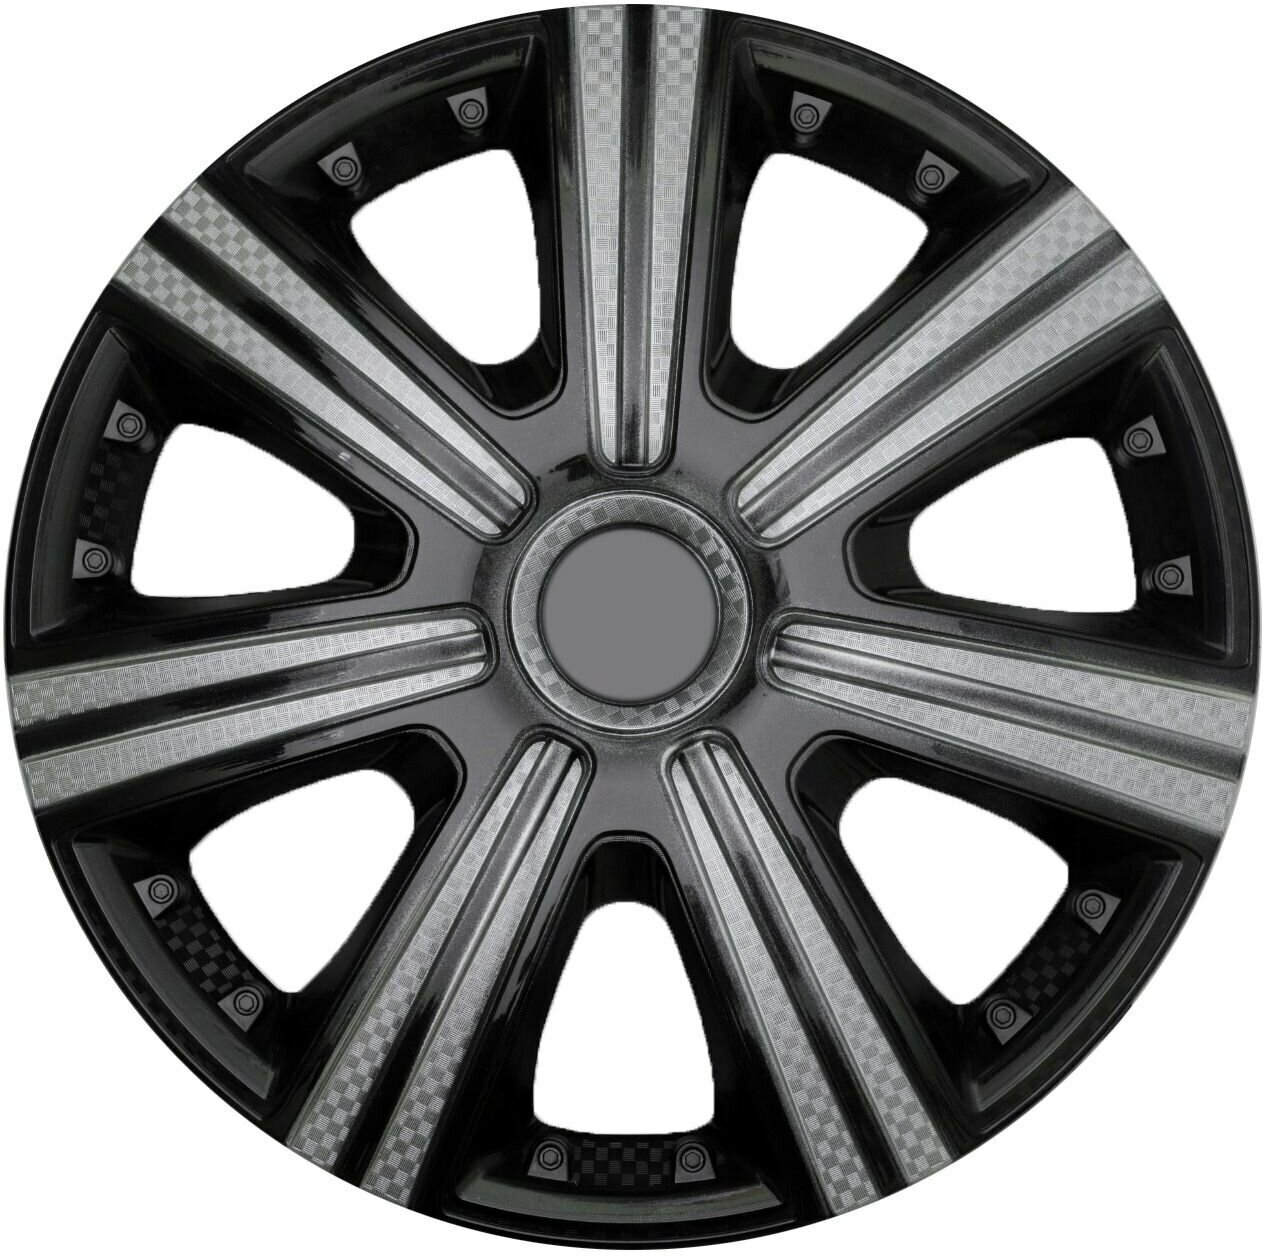 Колпаки на колеса DTM SUPER BLACK R15 комплект 4шт на диски радиус 15 легковой авто цвет серый черный карбон.